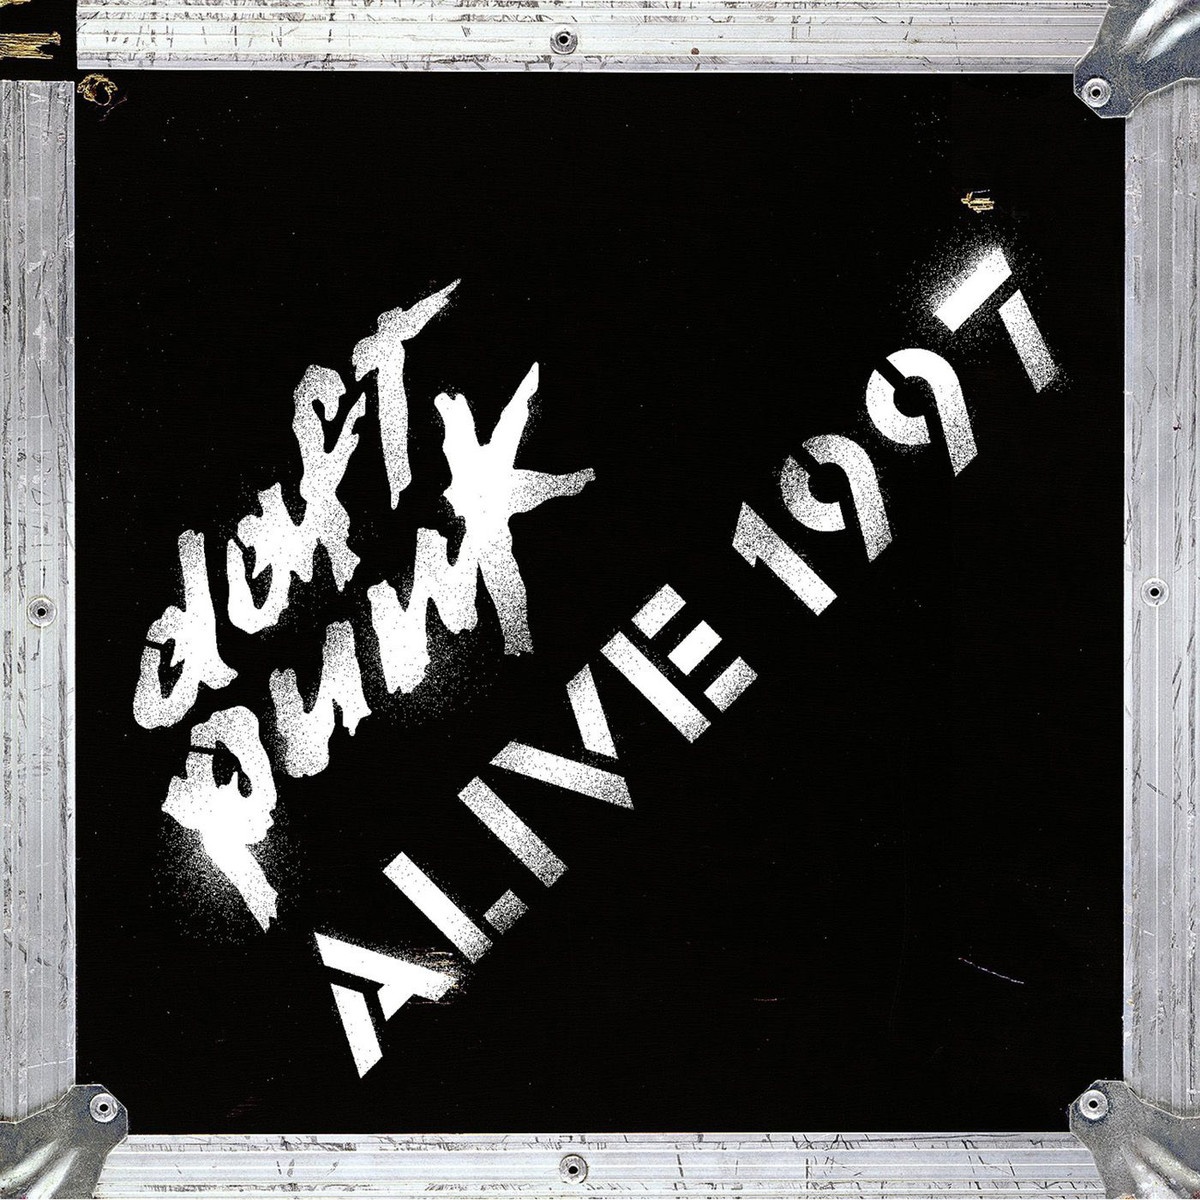 Alive 1997 (Live)